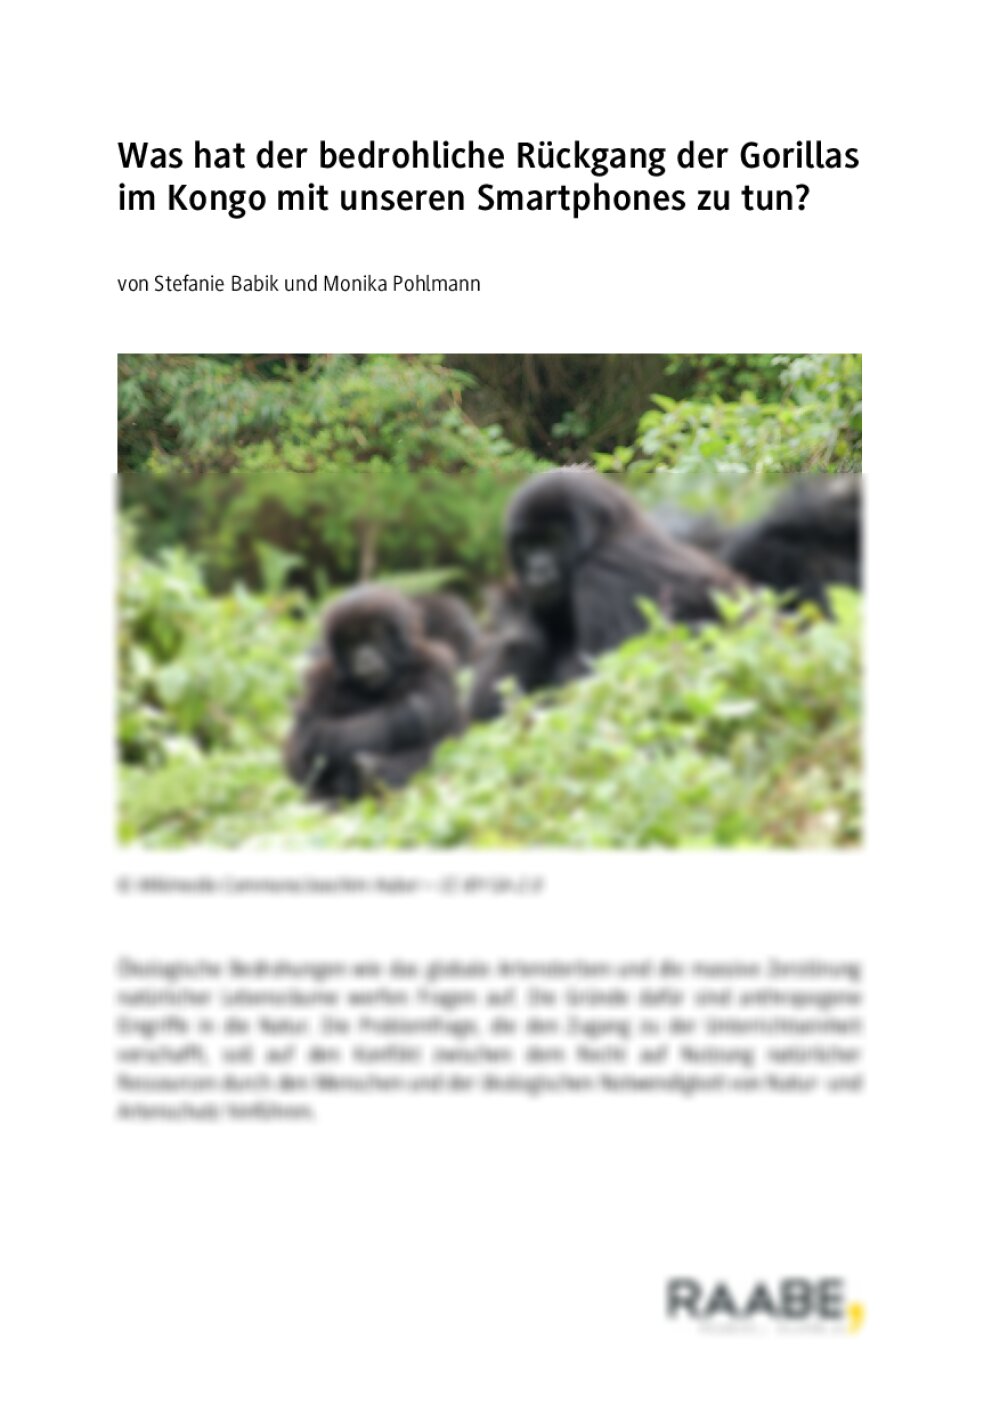 Bedrohlicher Rückgang der Gorillas im Kongo - Seite 1